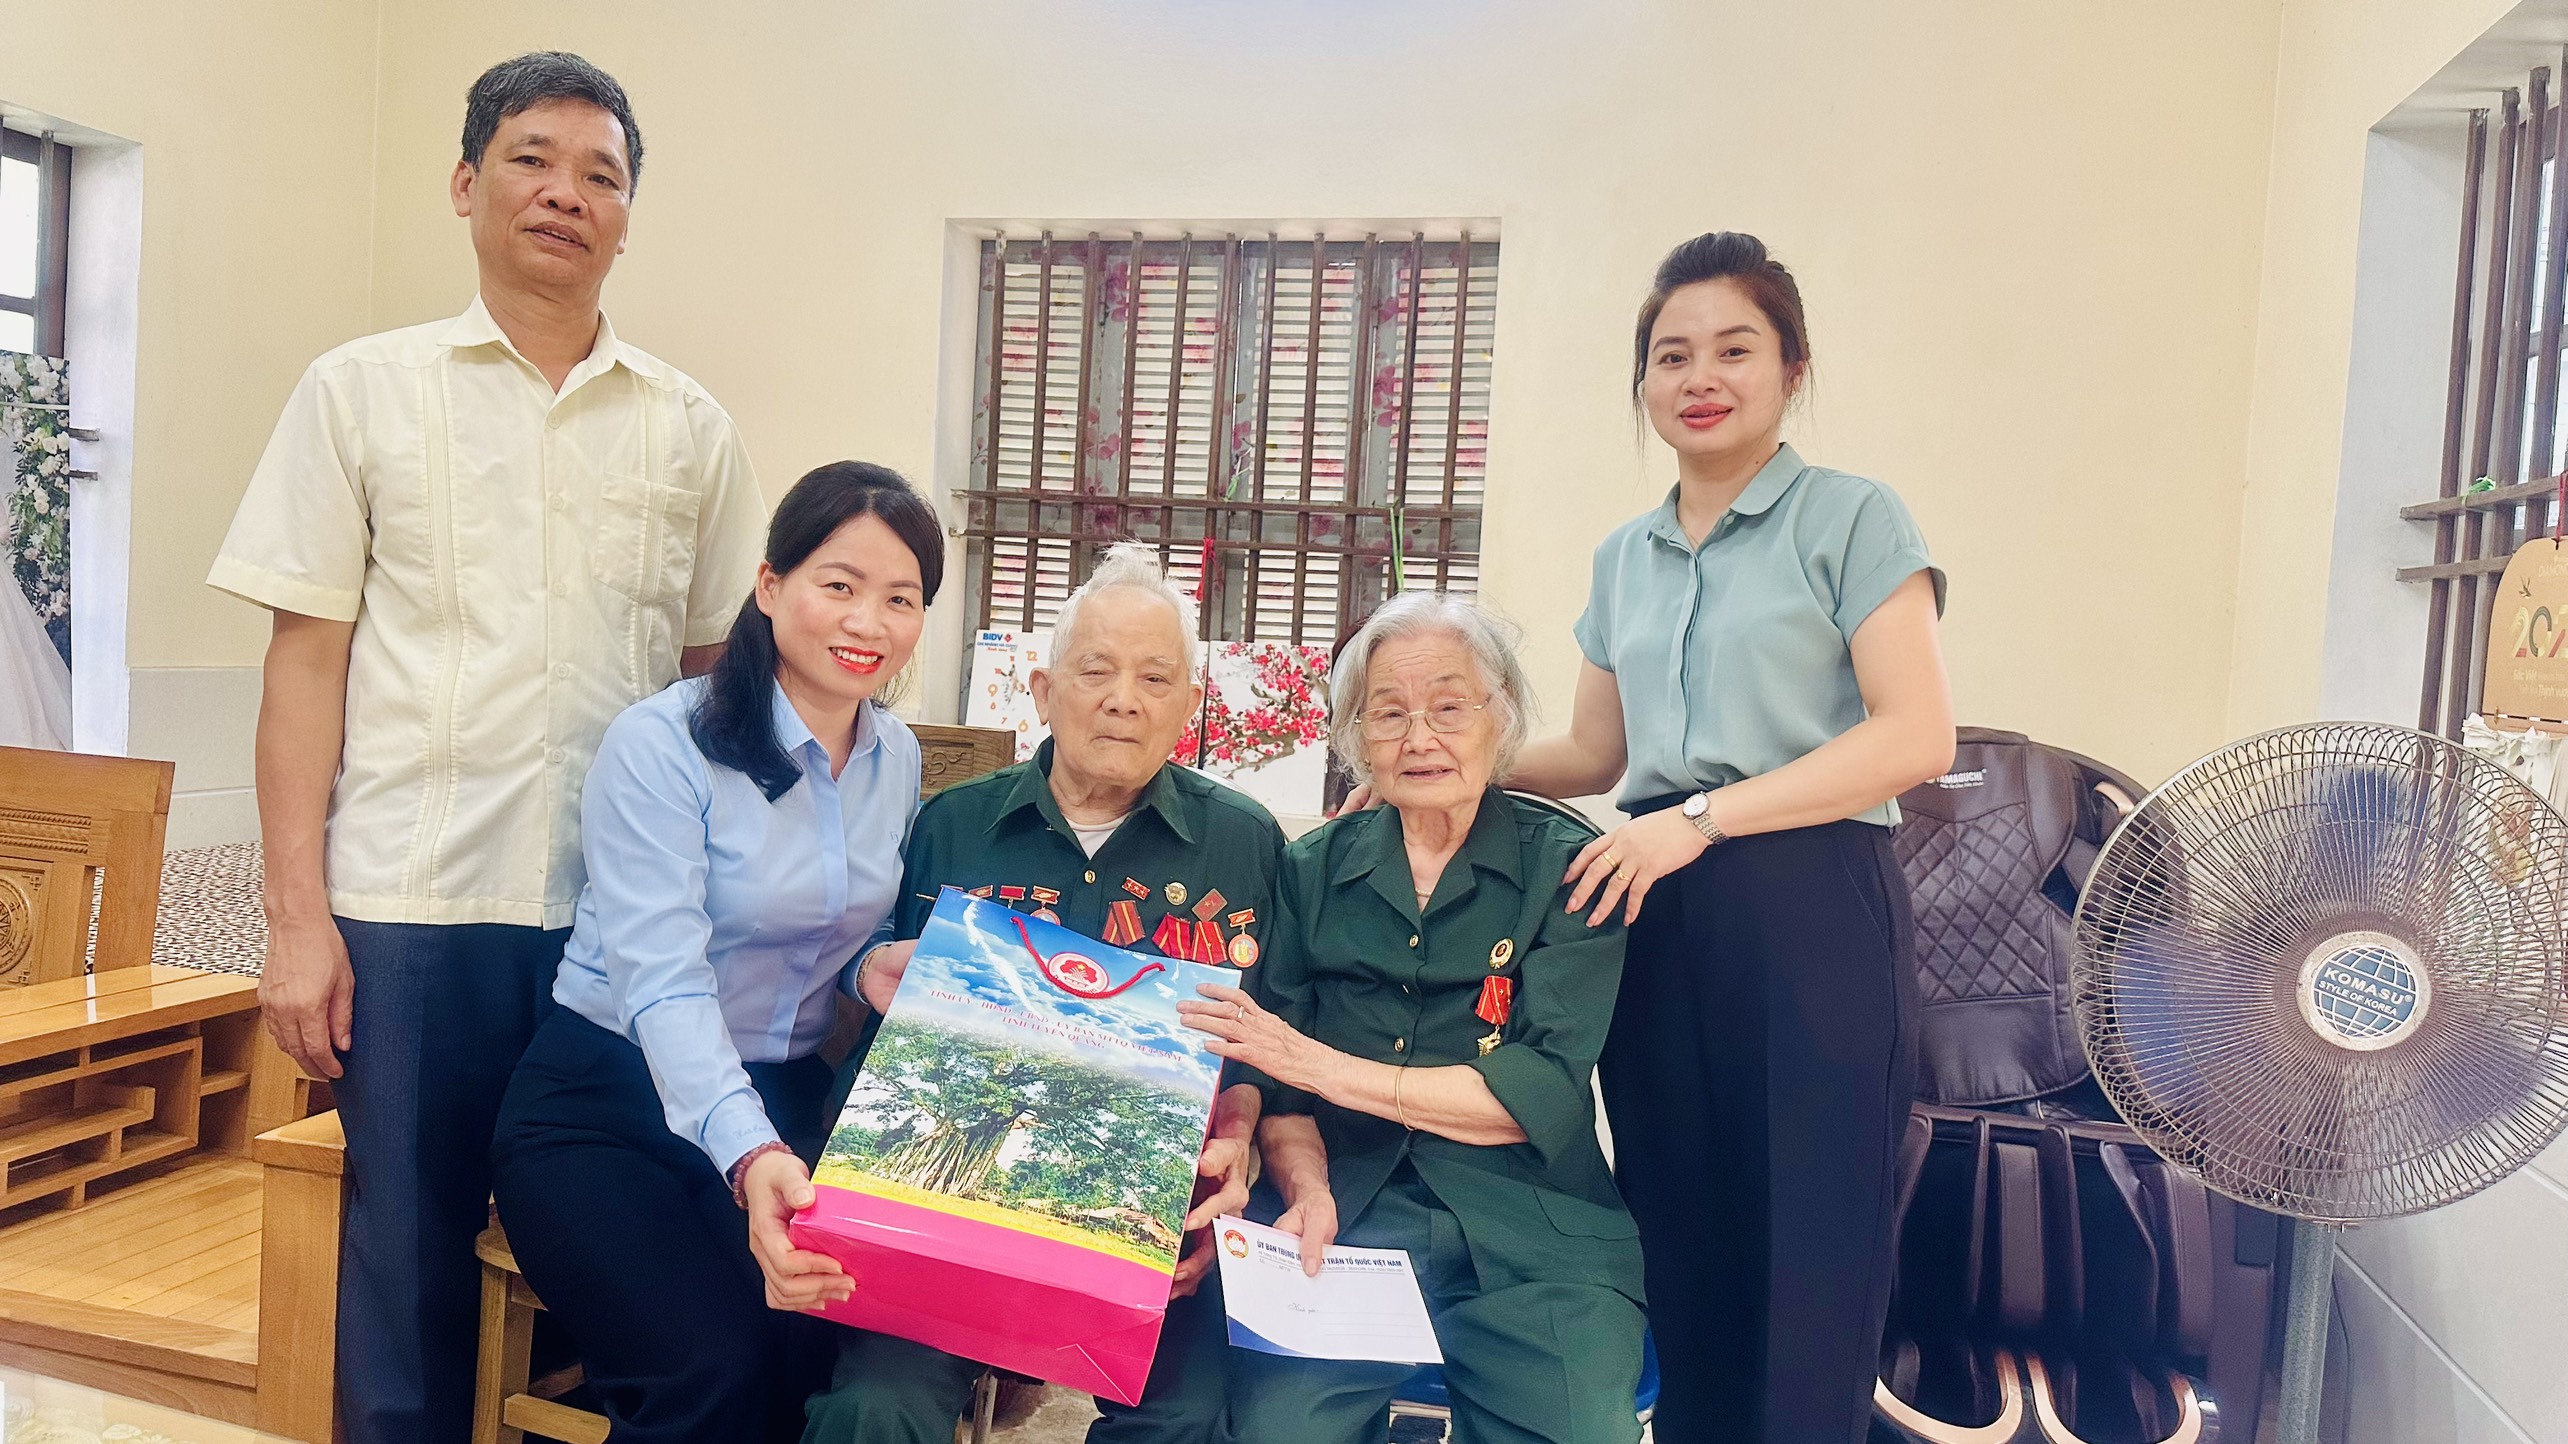 Phó Chủ tịch Ủy ban MTTQ tỉnh Tuyên Quang Trần Thị Hoàn thăm, tặng quà chiến sỹ Điện Biên, cựu dân công hỏa tuyến, thân nhân liệt sỹ trên địa bàn huyện Sơn Dương và thành phố Tuyên Quang